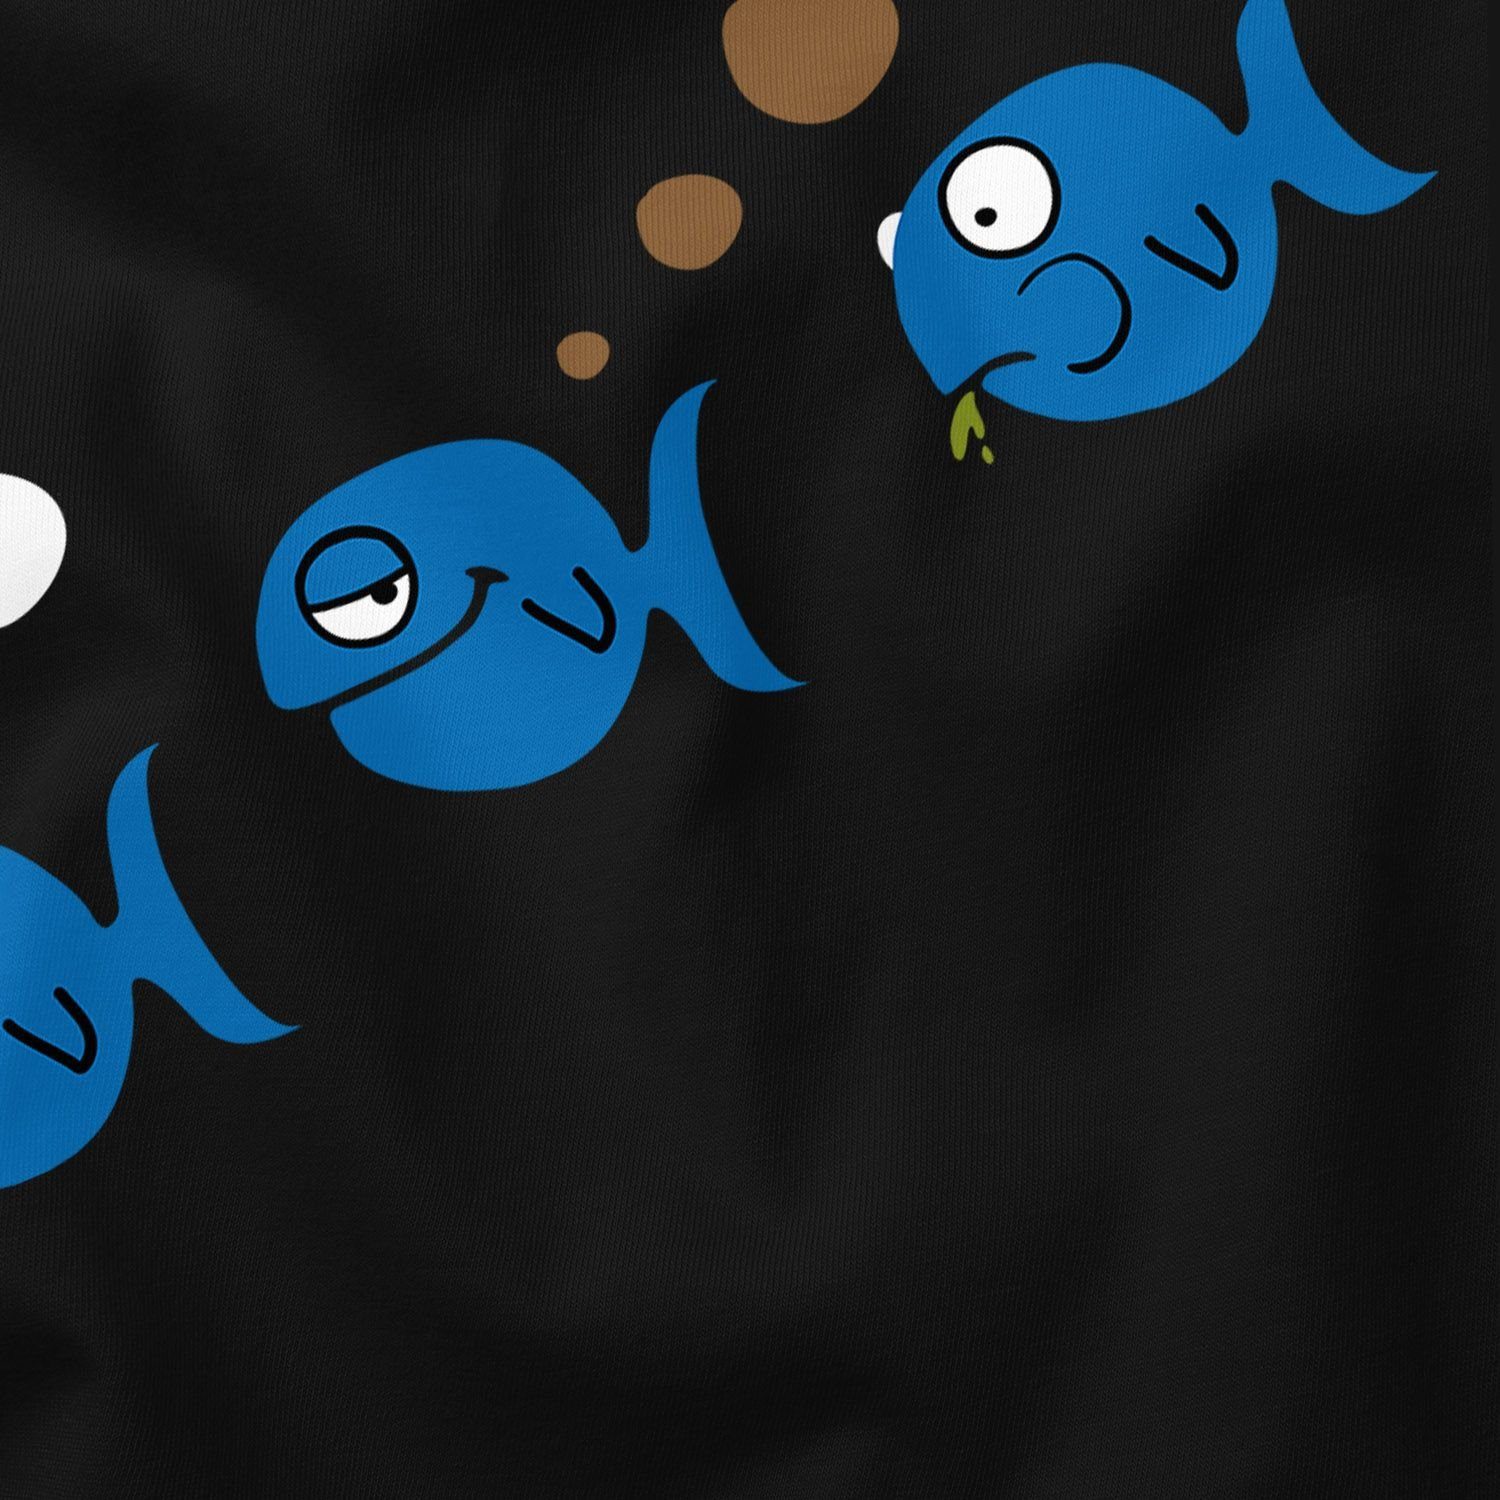 Meme Fische furzen Moonworks® T-Shirt mit Herren Print Print-Shirt MoonWorks Fun-Shirt Fischfurz lustig Scherz Witz